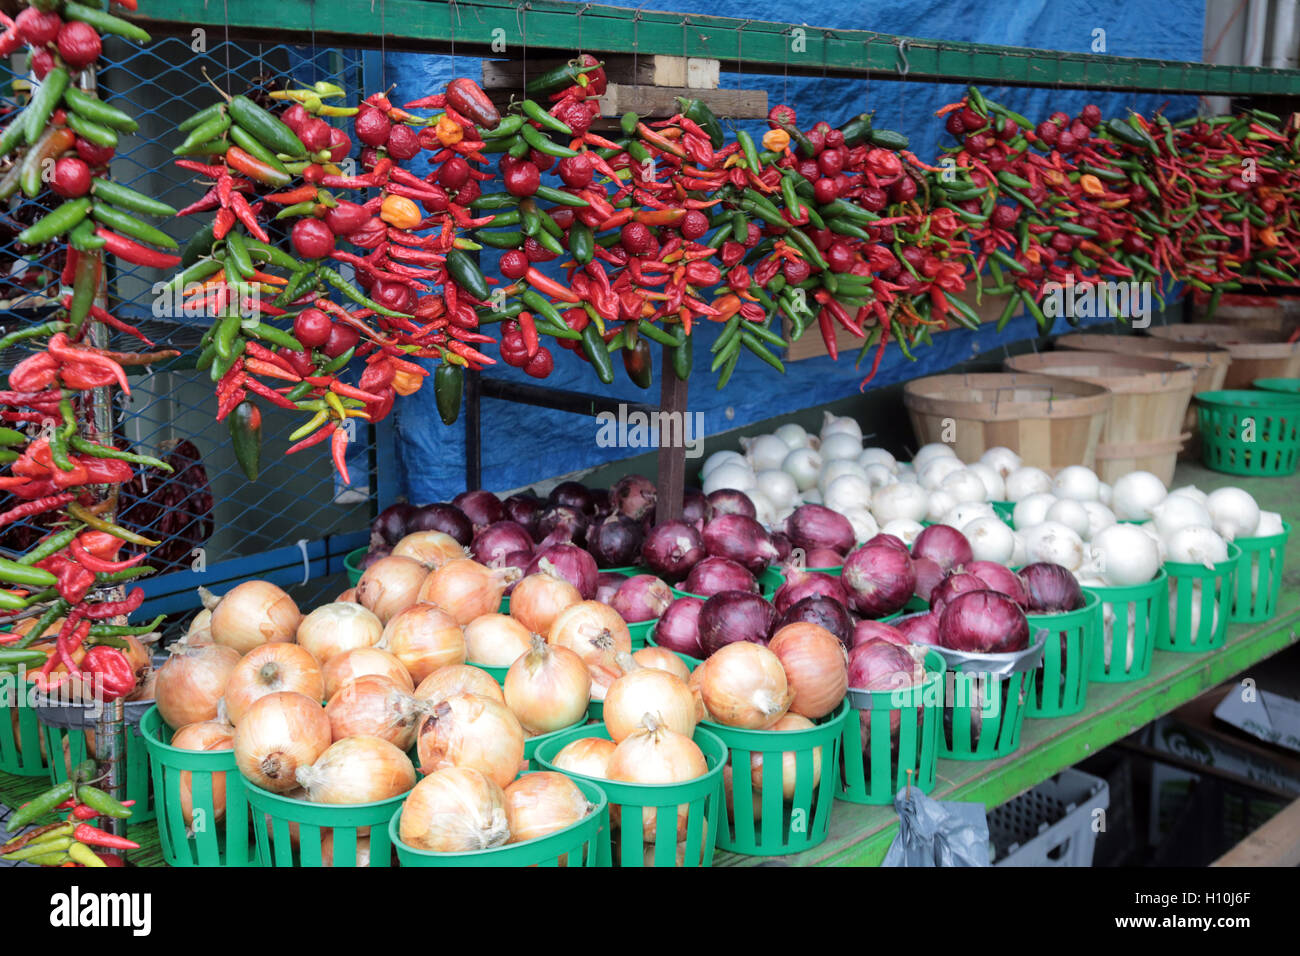 Produce at Jean-Talon Market, Montreal, Cananda Stock Photo